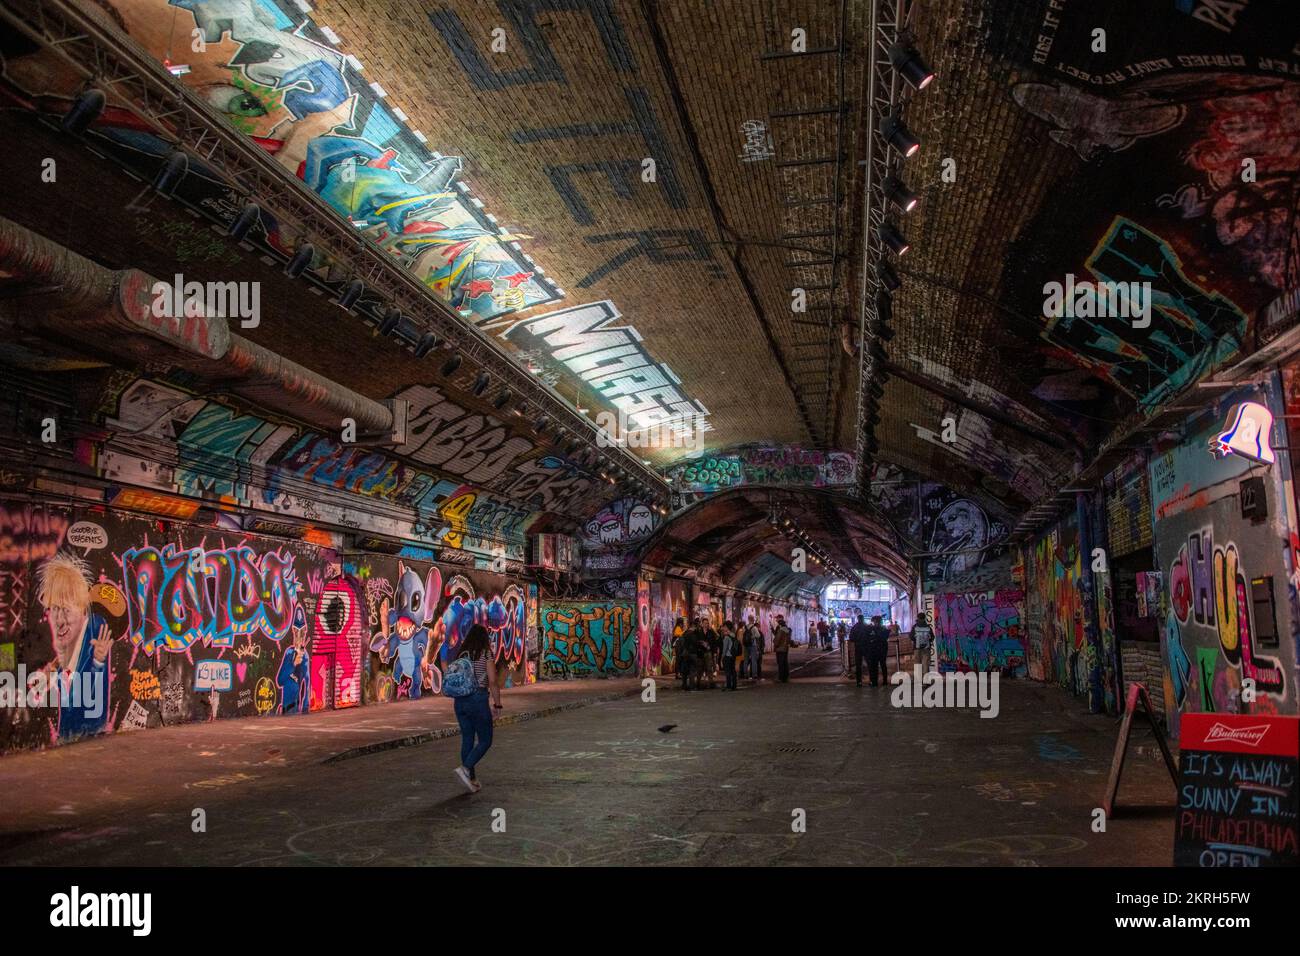 Schöner öffentlicher Ort, um Freunde im Tunnel zu treffen, der mit Graffitis in verschiedenen Farben bemalt ist Stockfoto